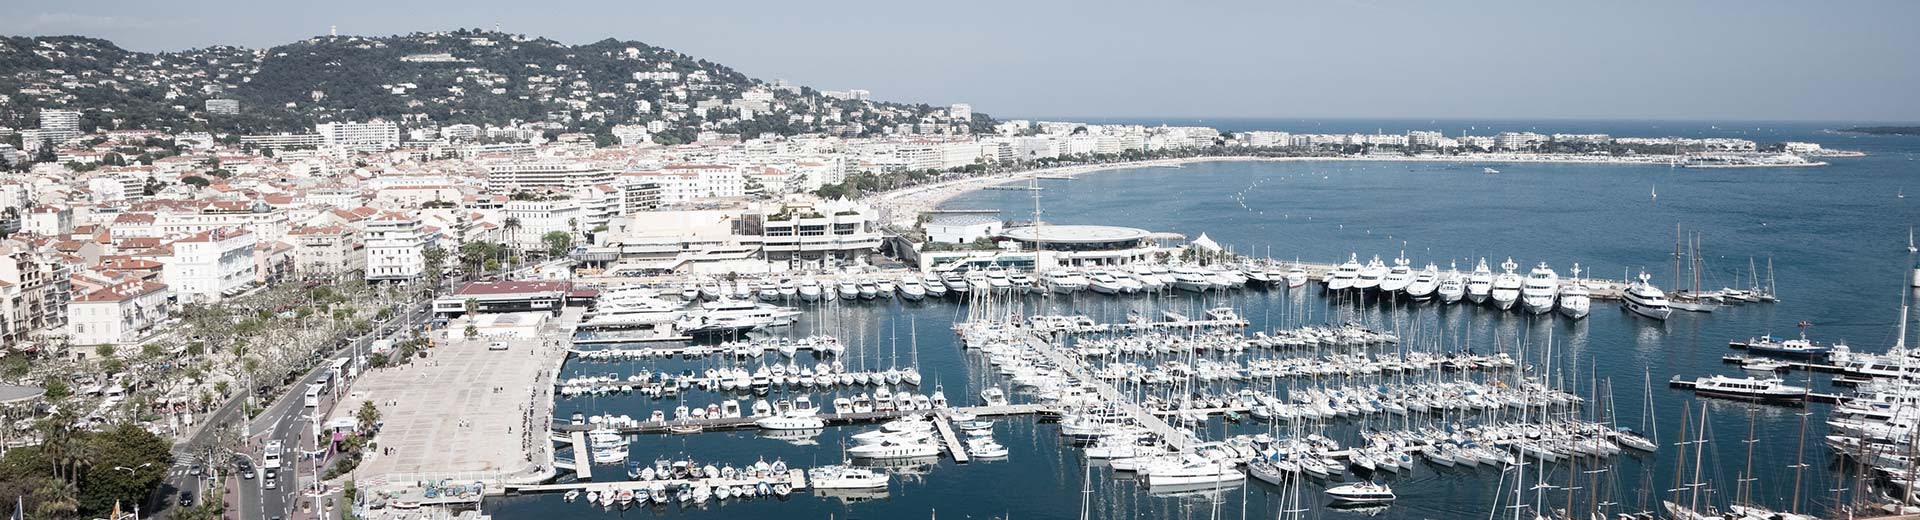 Des bateaux blancs et des bâtiments blancs le long du rivage par une journée claire et ensoleillée à Cannes.